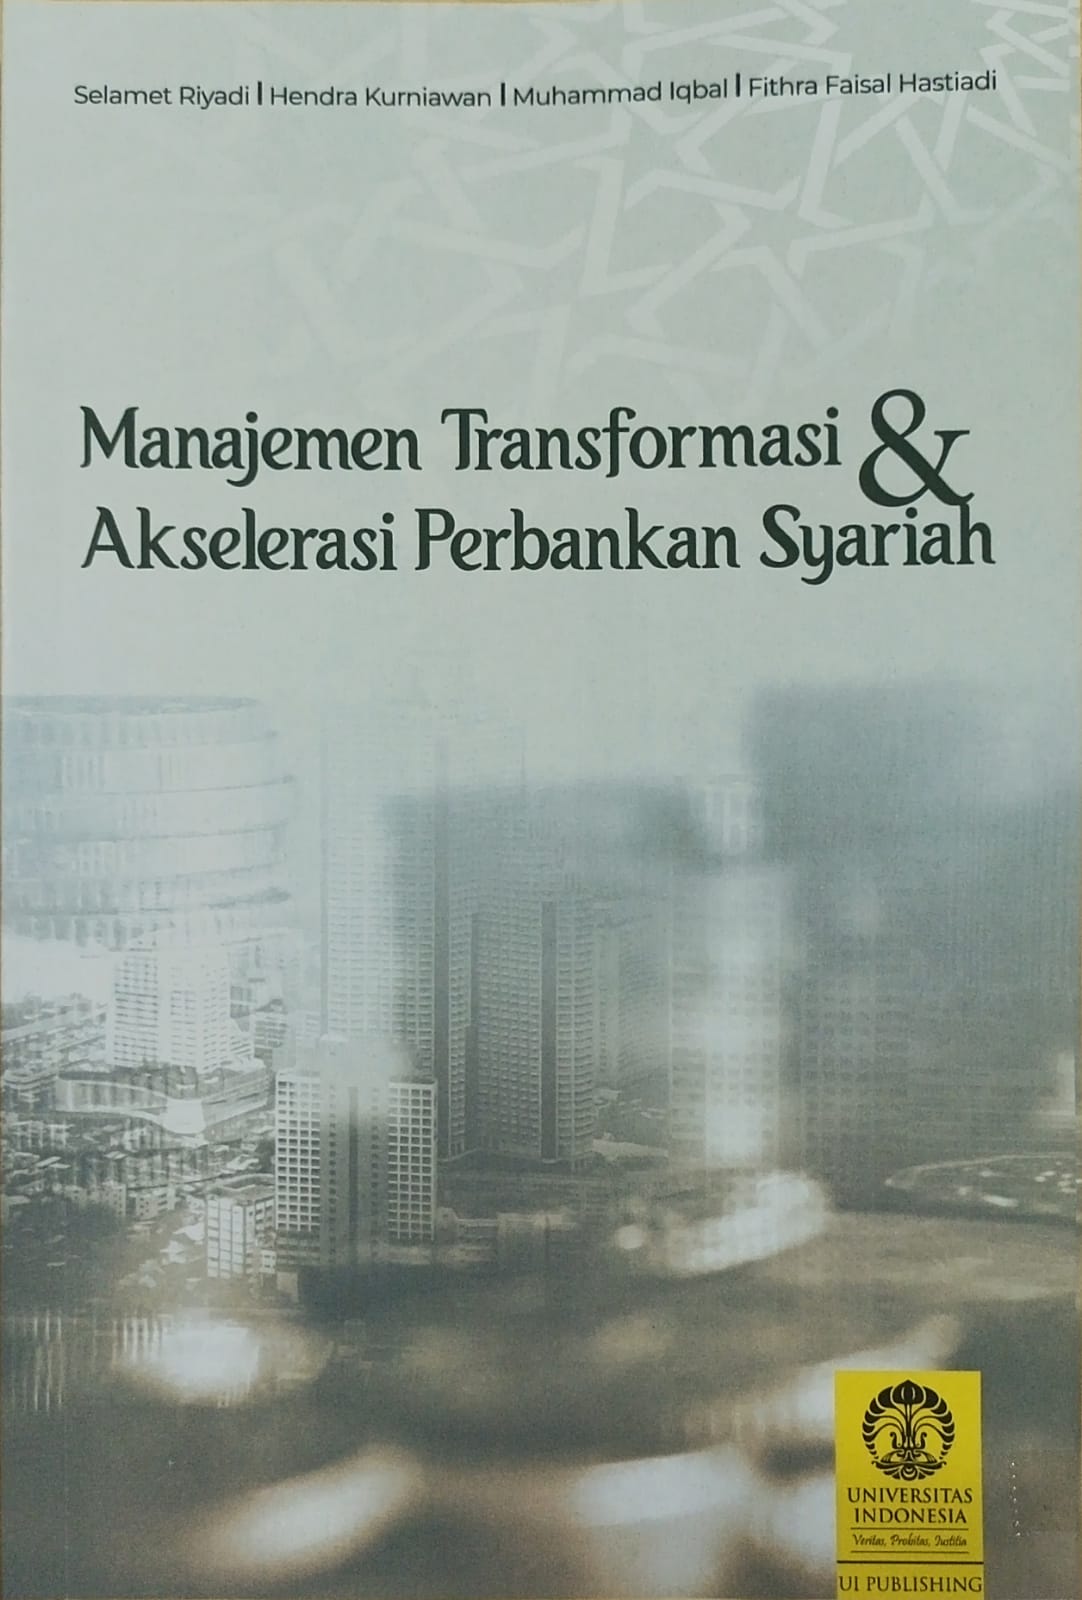 Manajemen transformasi dan akselerasi perbankan syariah